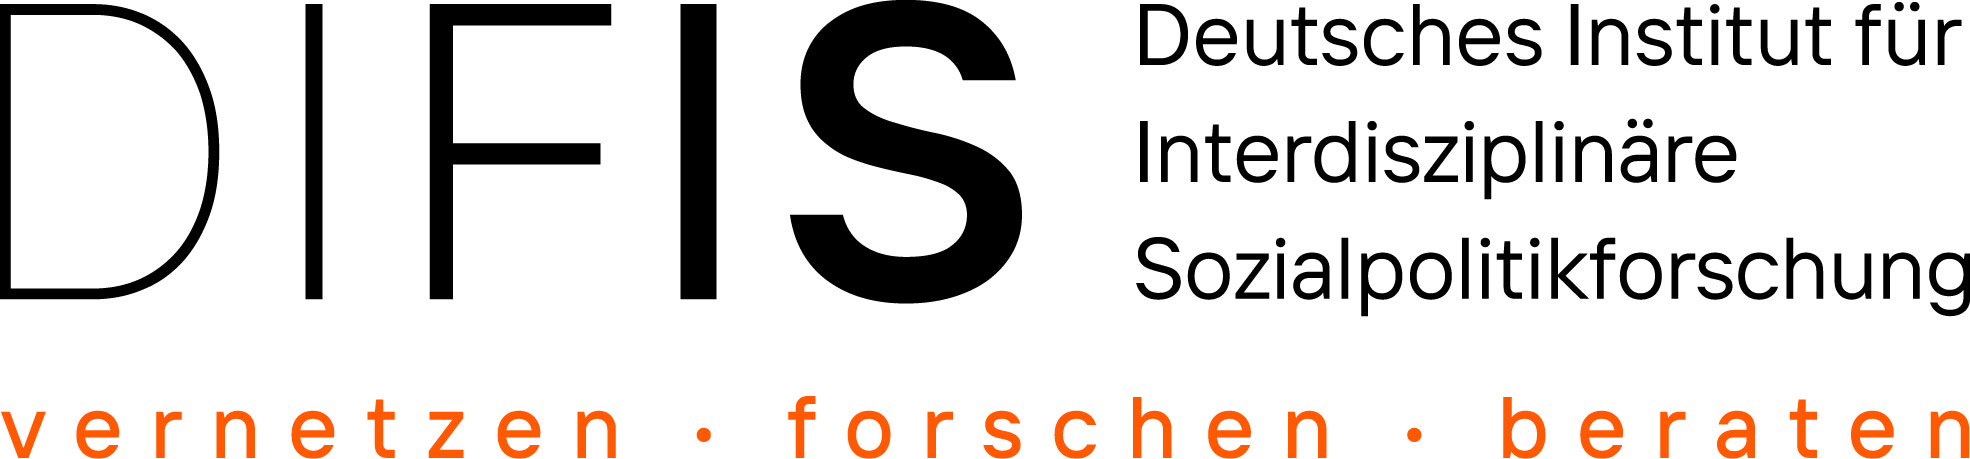 Deutsches Institut für Interdisziplinäre Sozialpolitikforschung